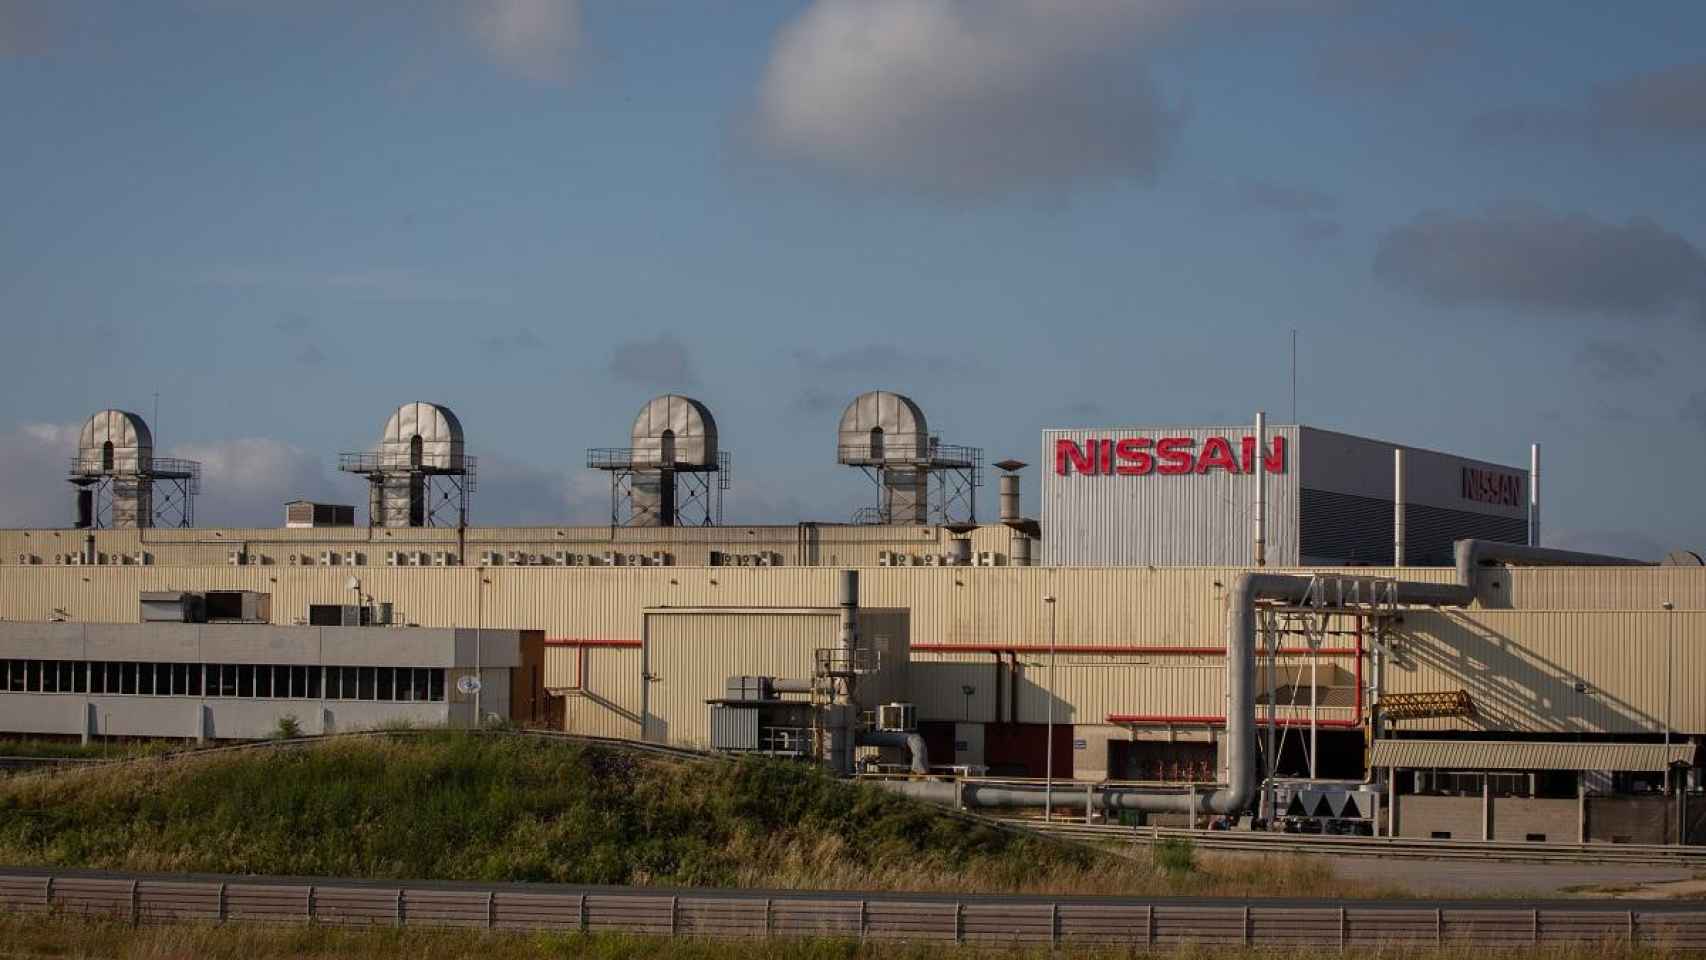 Exterior de la fábrica de Nissan en la Zona Franca de Barcelona / EUROPA PRESS